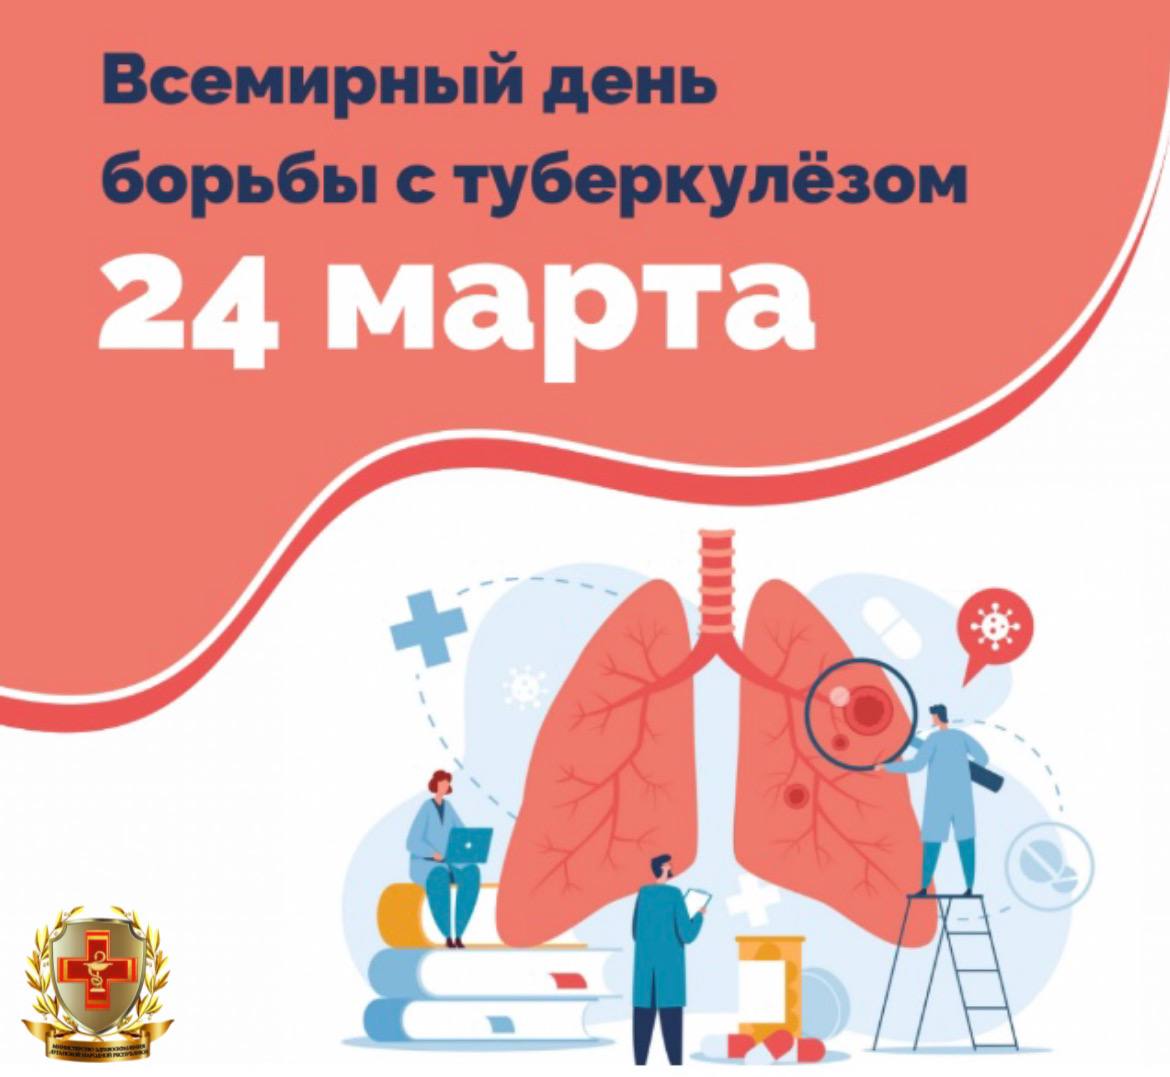 Всемирный  день борьбы с туберкулезом - 24 марта.